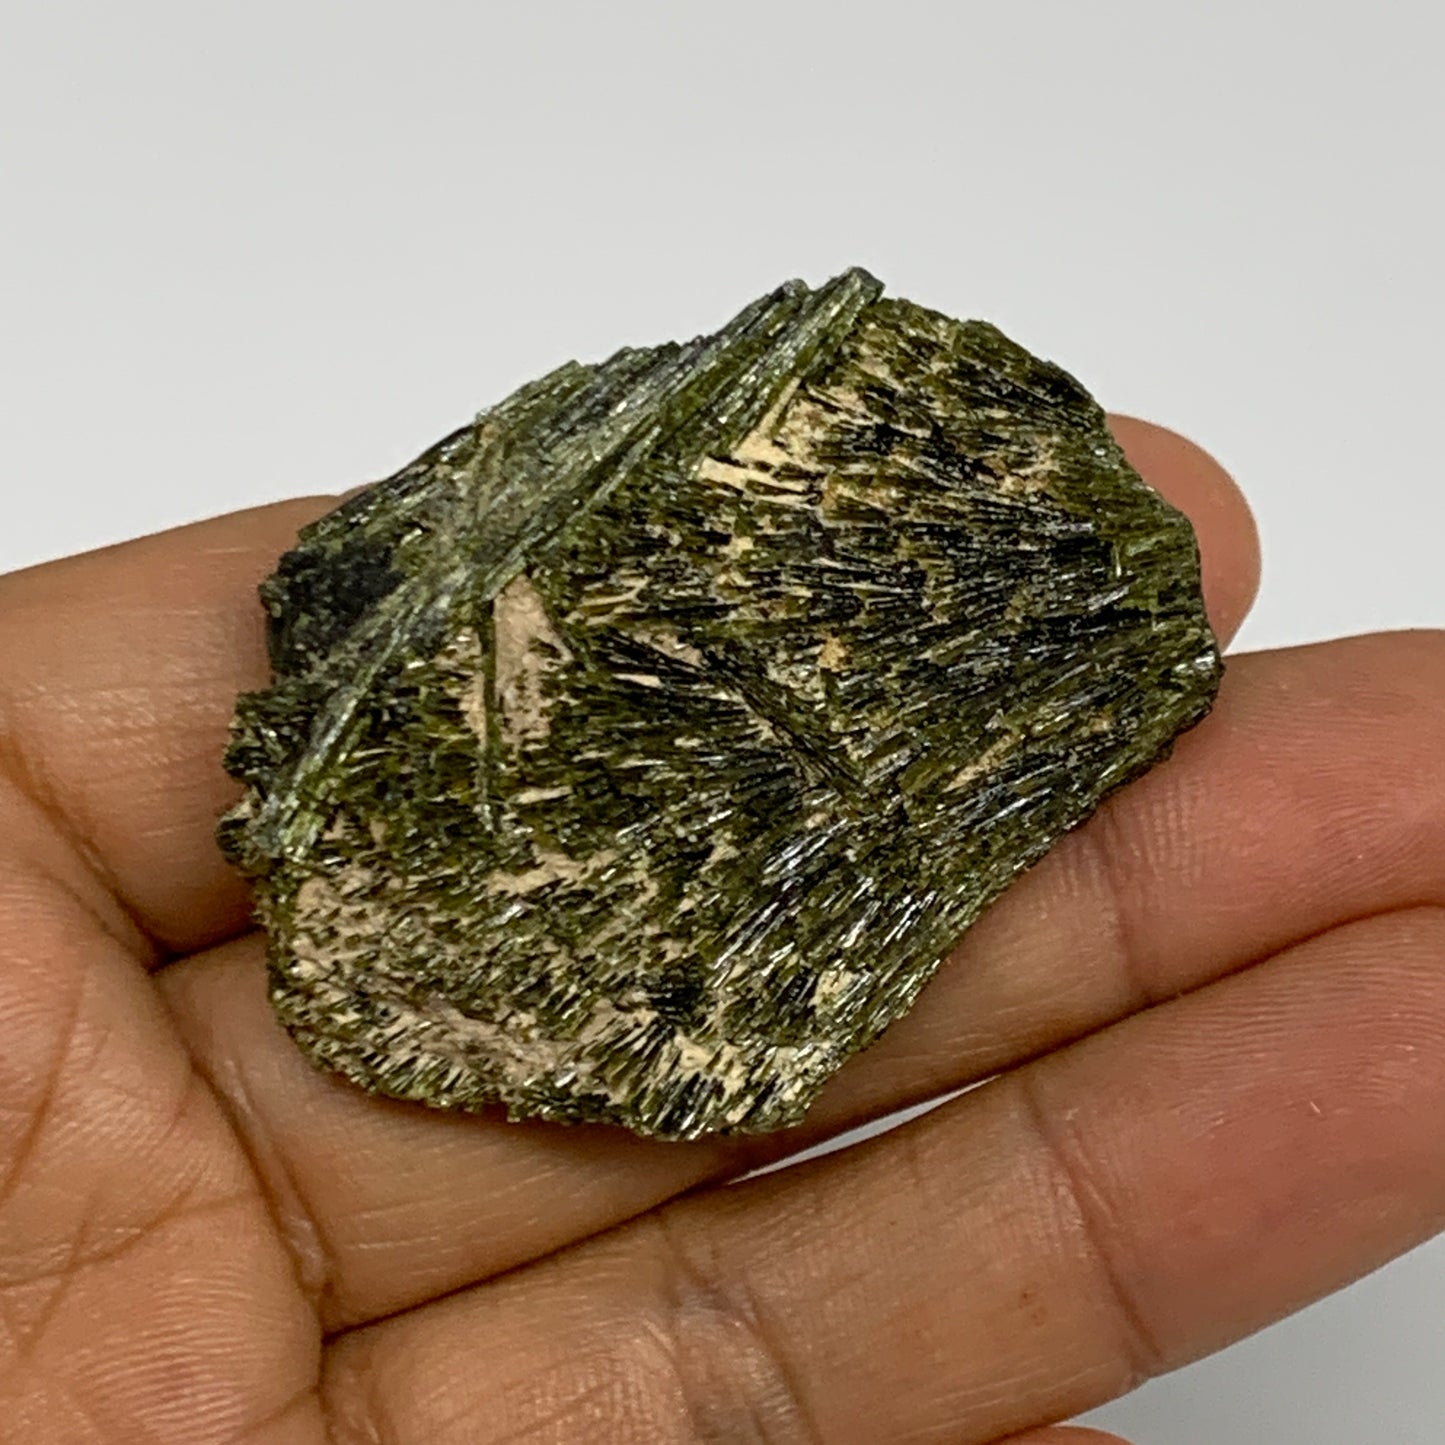 34.5g,1.8"x1.4"x0.6",Green Epidote Custer/Leaf Mineral Specimen @Pakistan,B27592